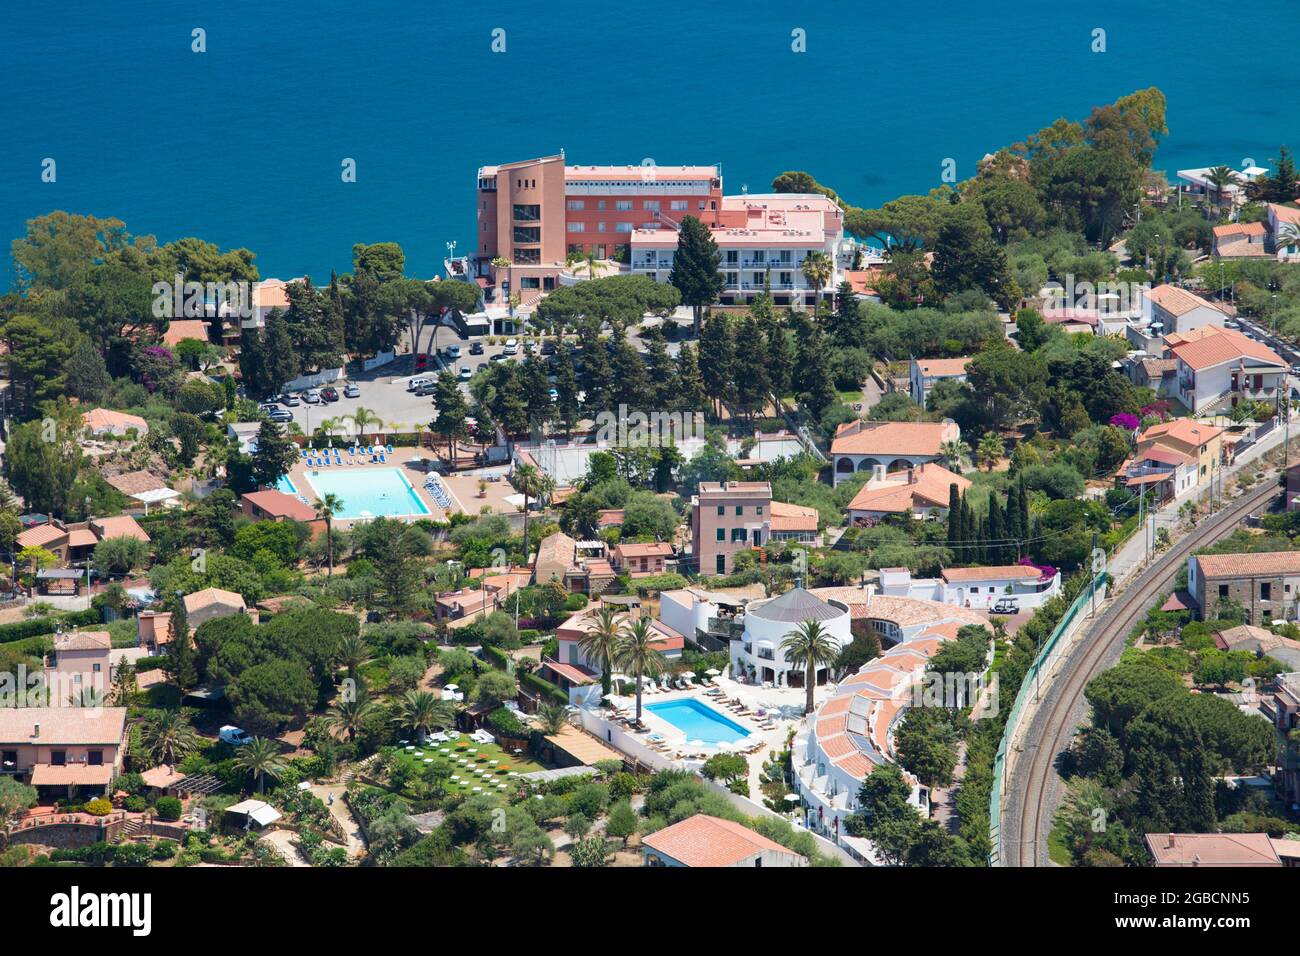 Cefalù, Palermo, Sizilien, Italien. Blick auf die Hotelgärten vom Gipfel von La Rocca, dem noch türkisfarbenen Wasser der Calura Bay dahinter. Stockfoto